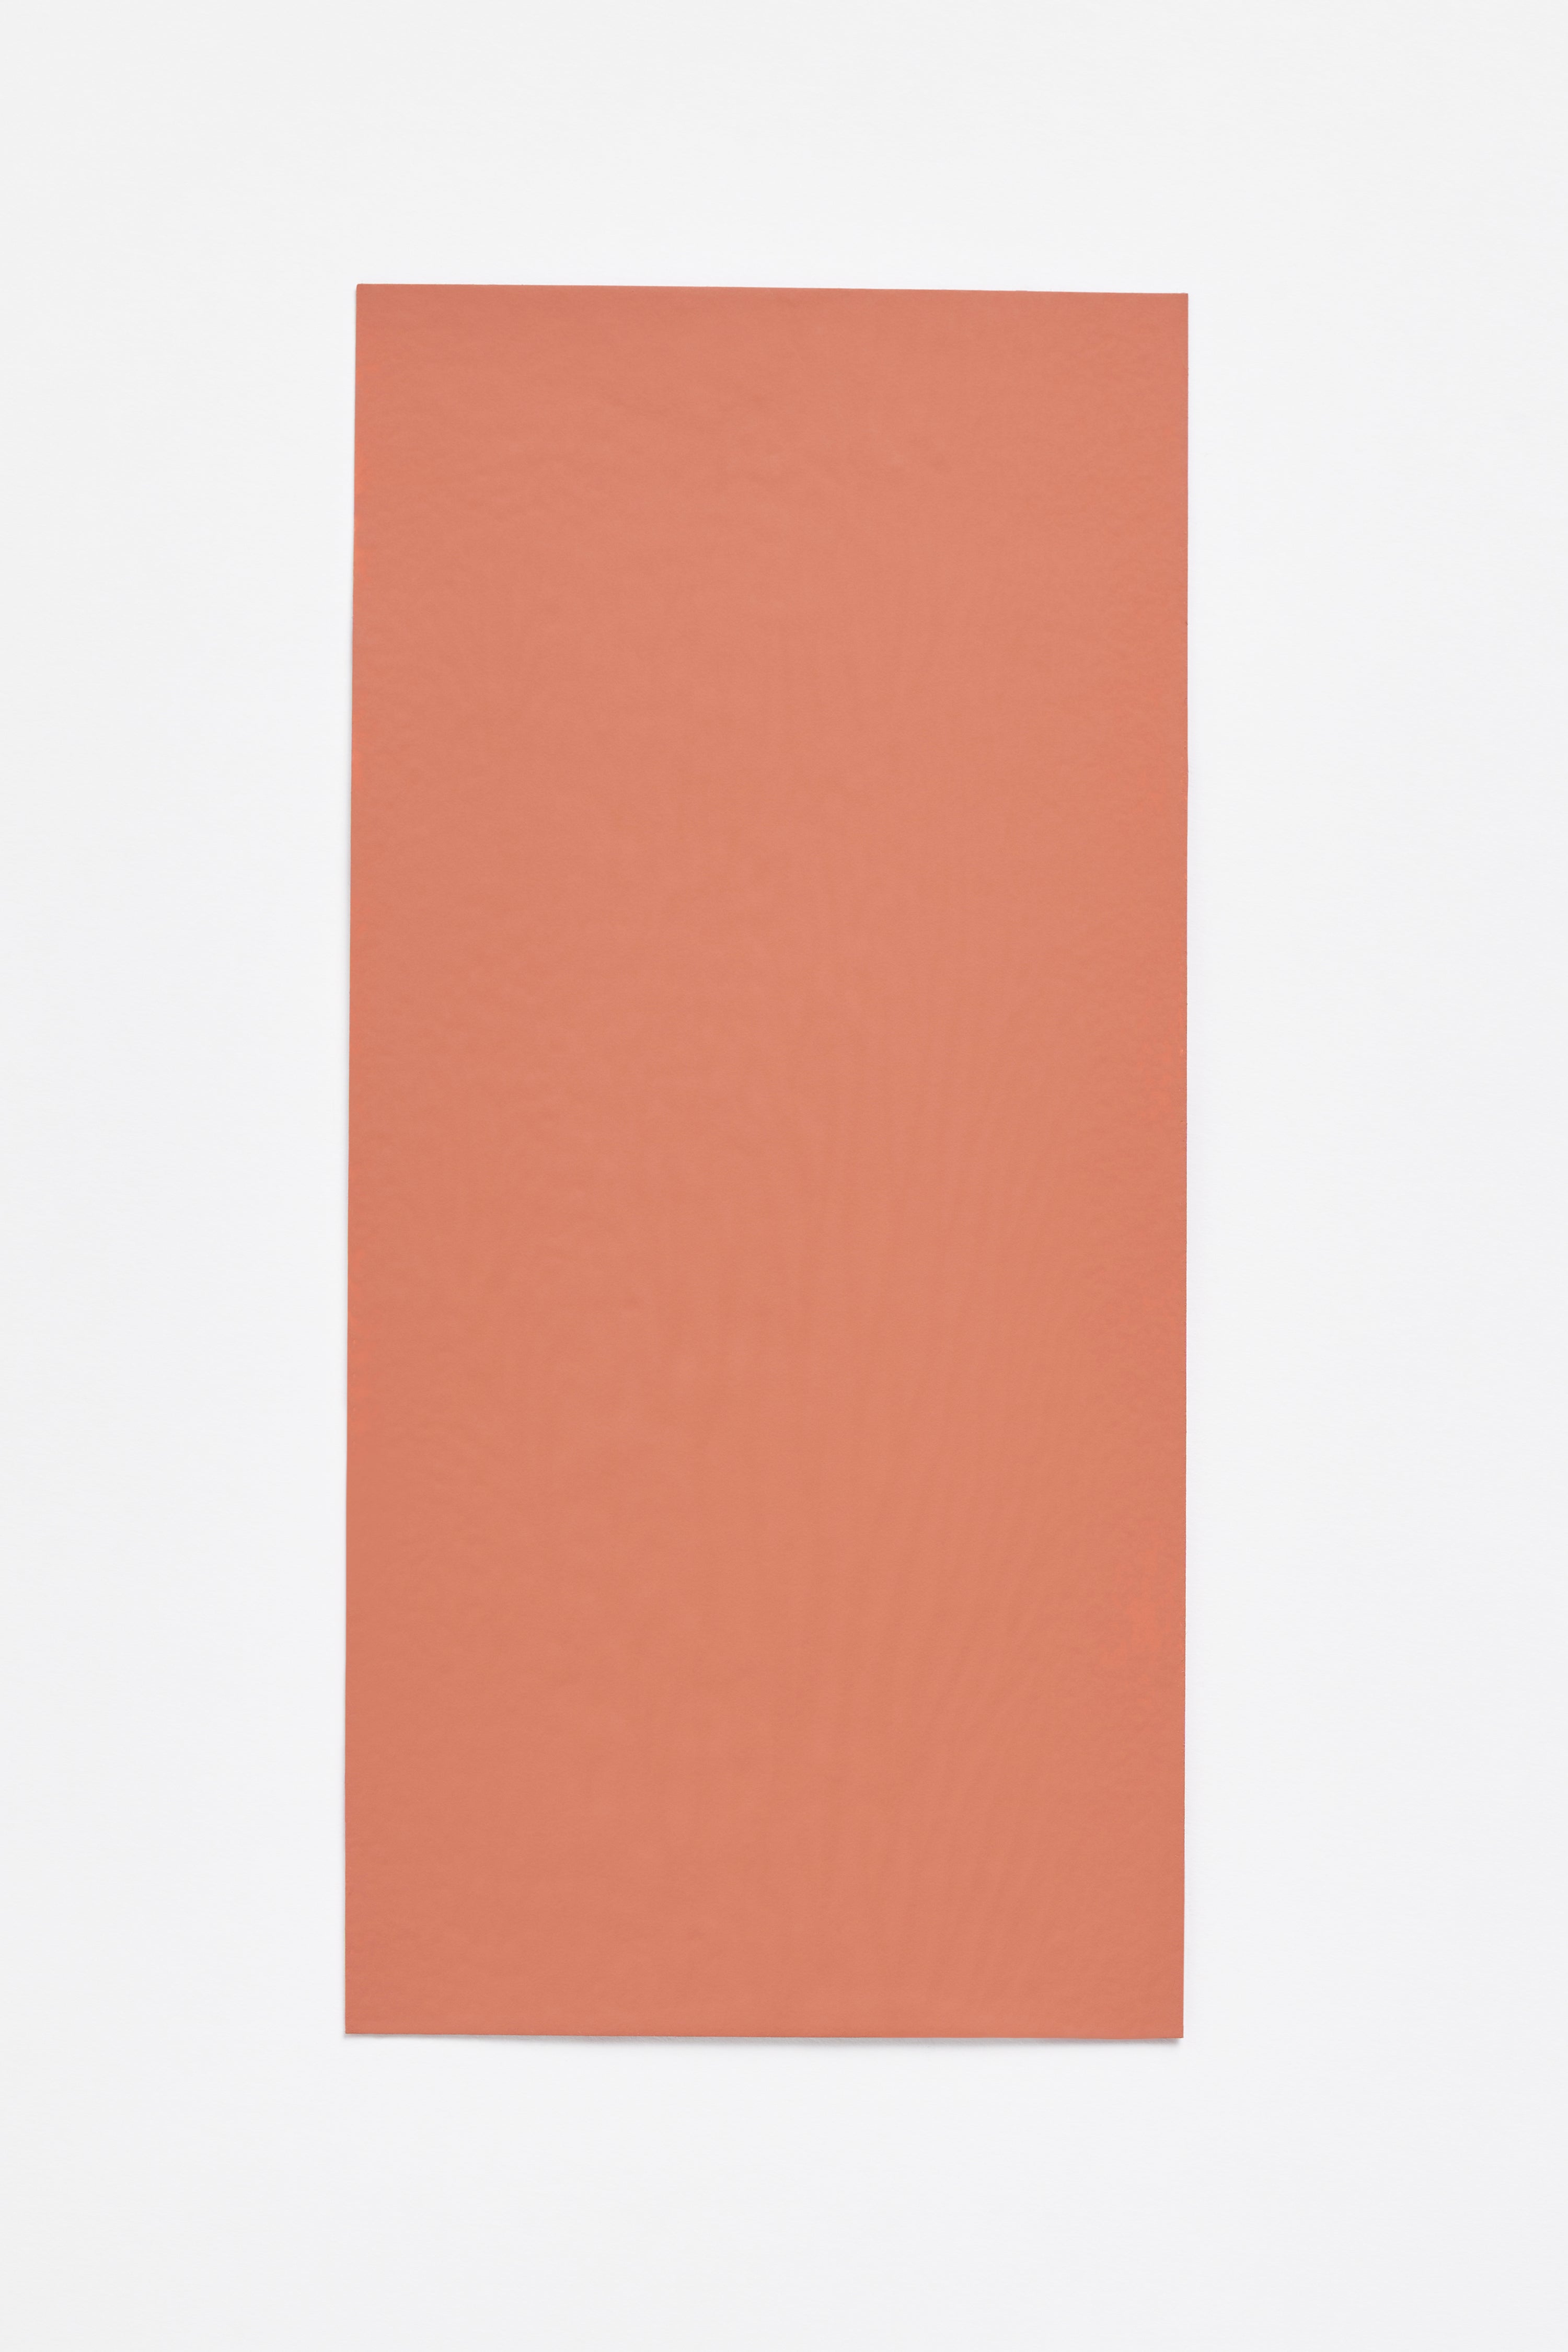 Harissa — a paint colour developed by Sabine Marcelis for Blēo